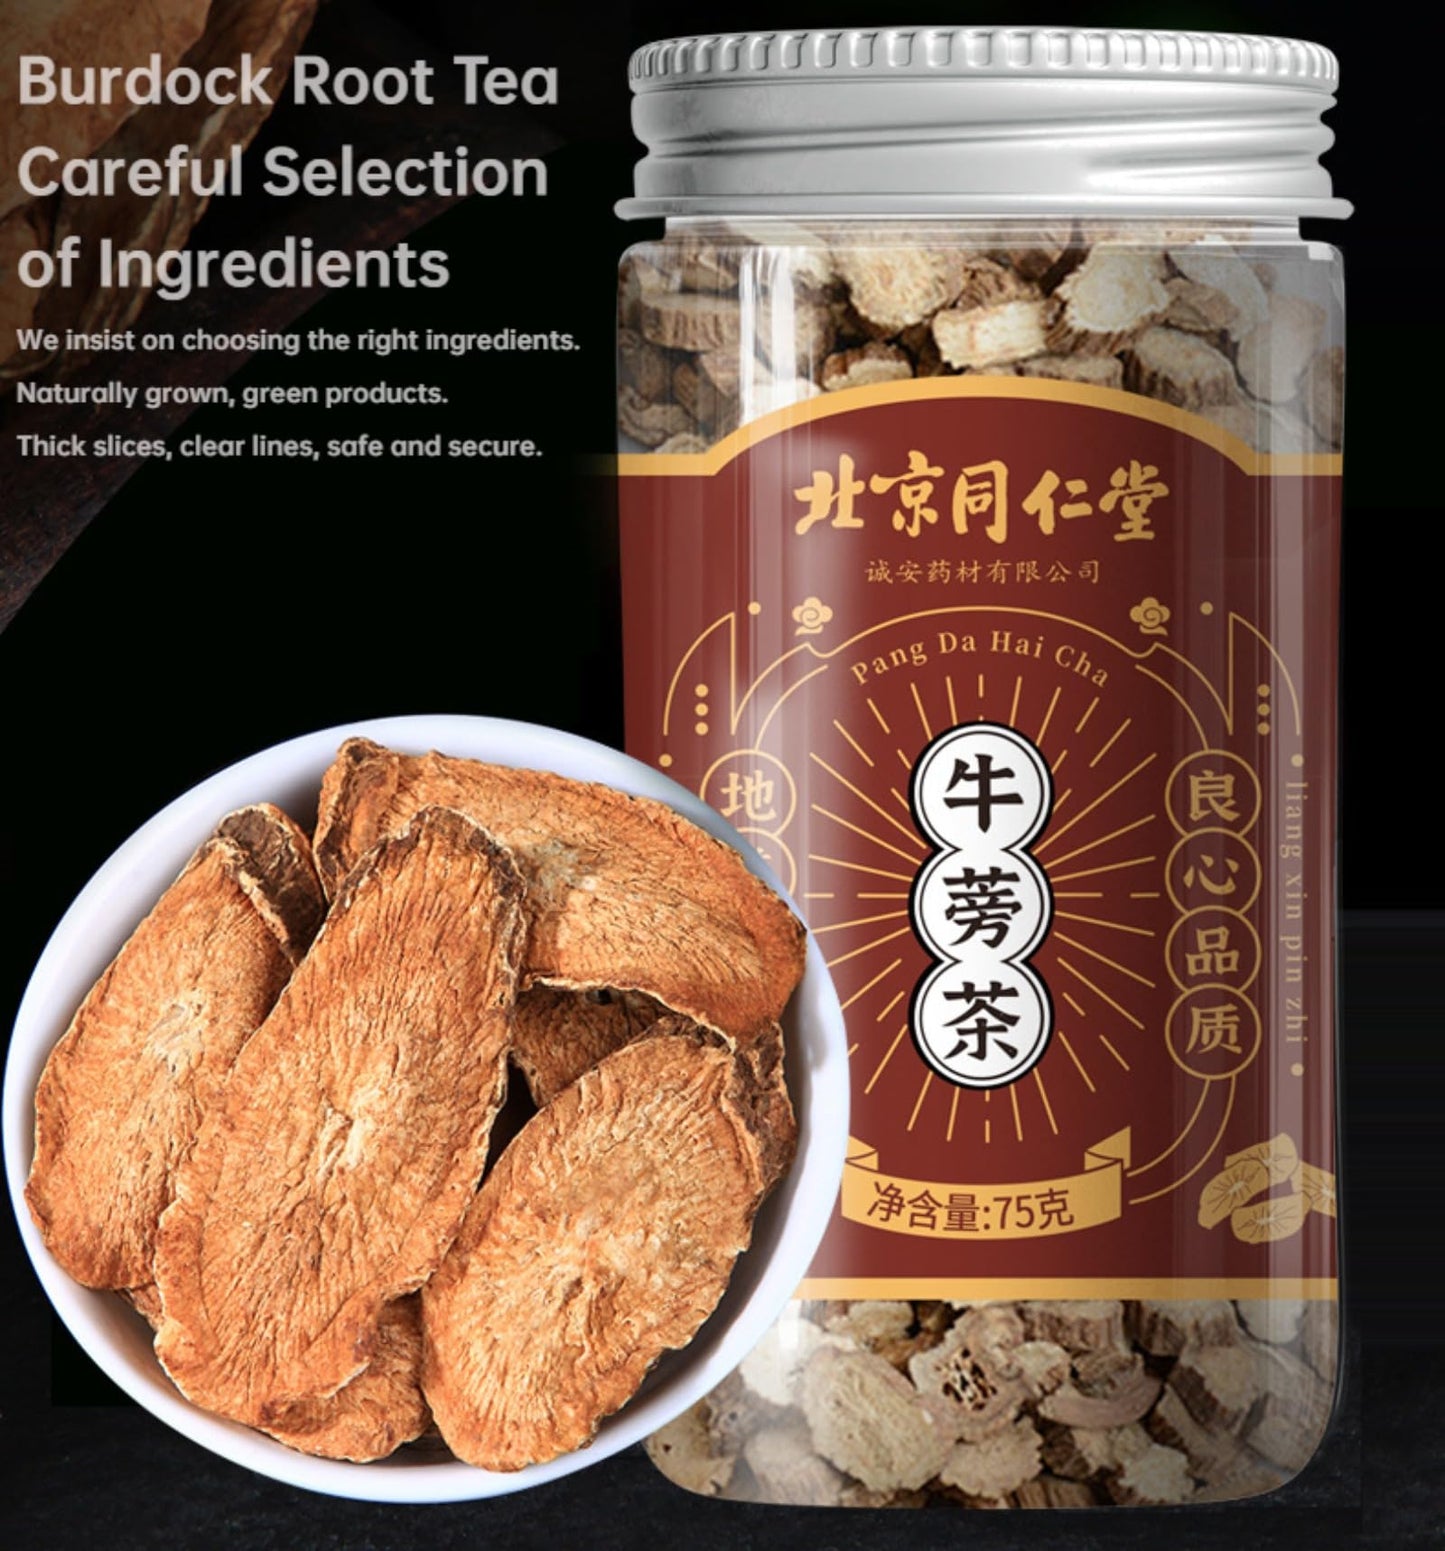 Tong ren tang Dried burdock root tea, 75g/2.64oz Burdock root cut 100% natural without additives burdock root tea, Herbal tea 北京同仁堂牛蒡根黄金牛蒡茶75克